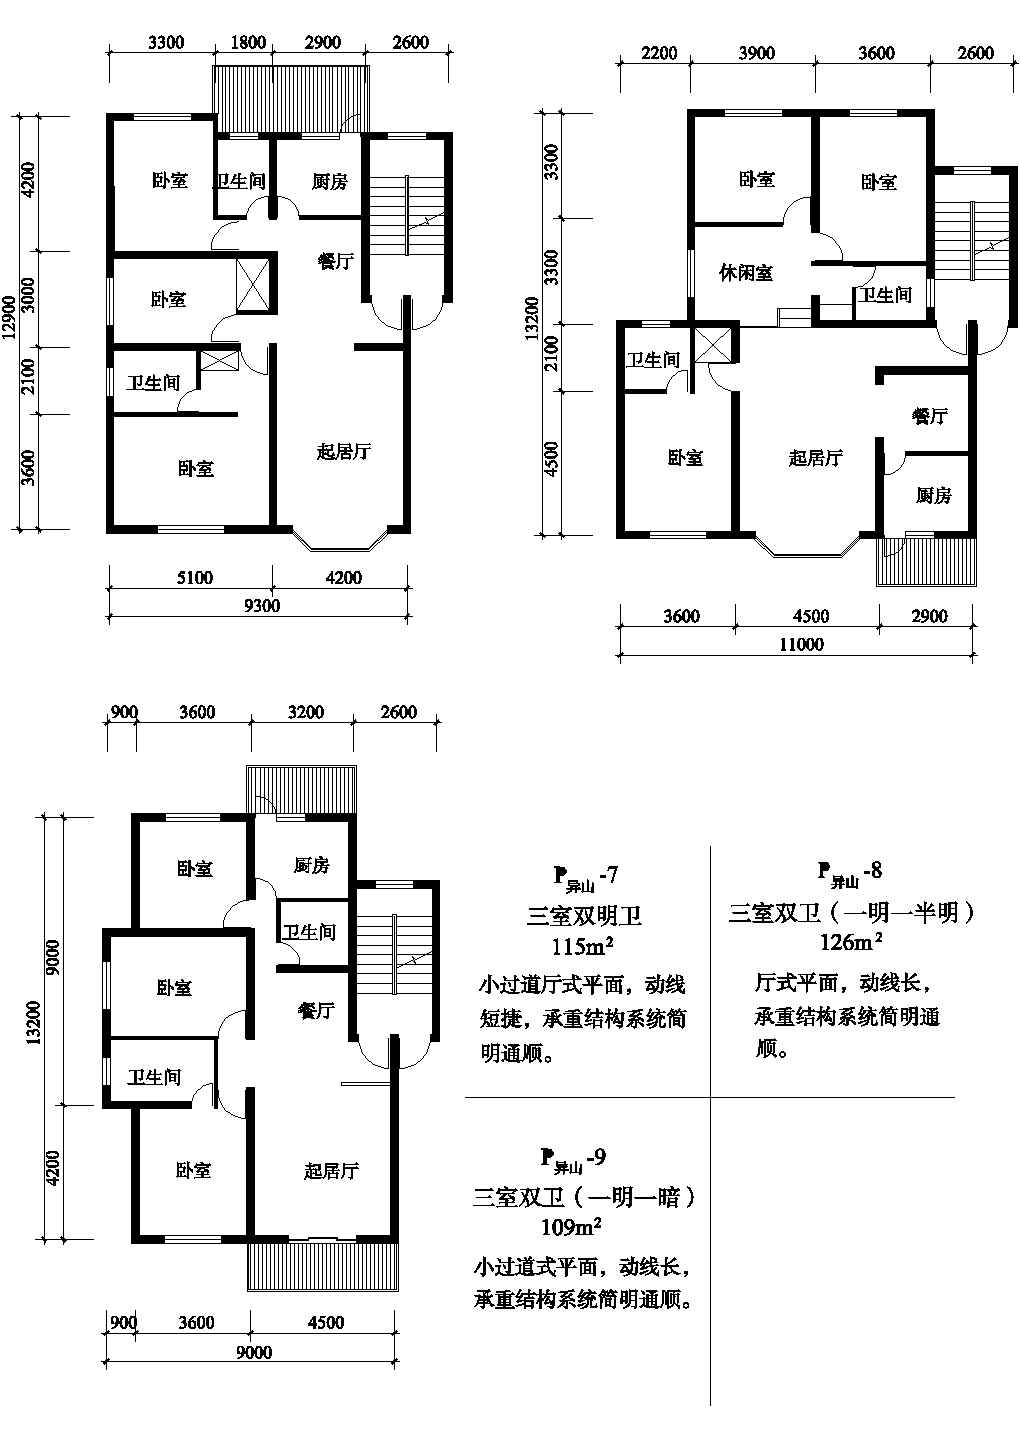 三室155/109/126平方单元式住宅平面图纸